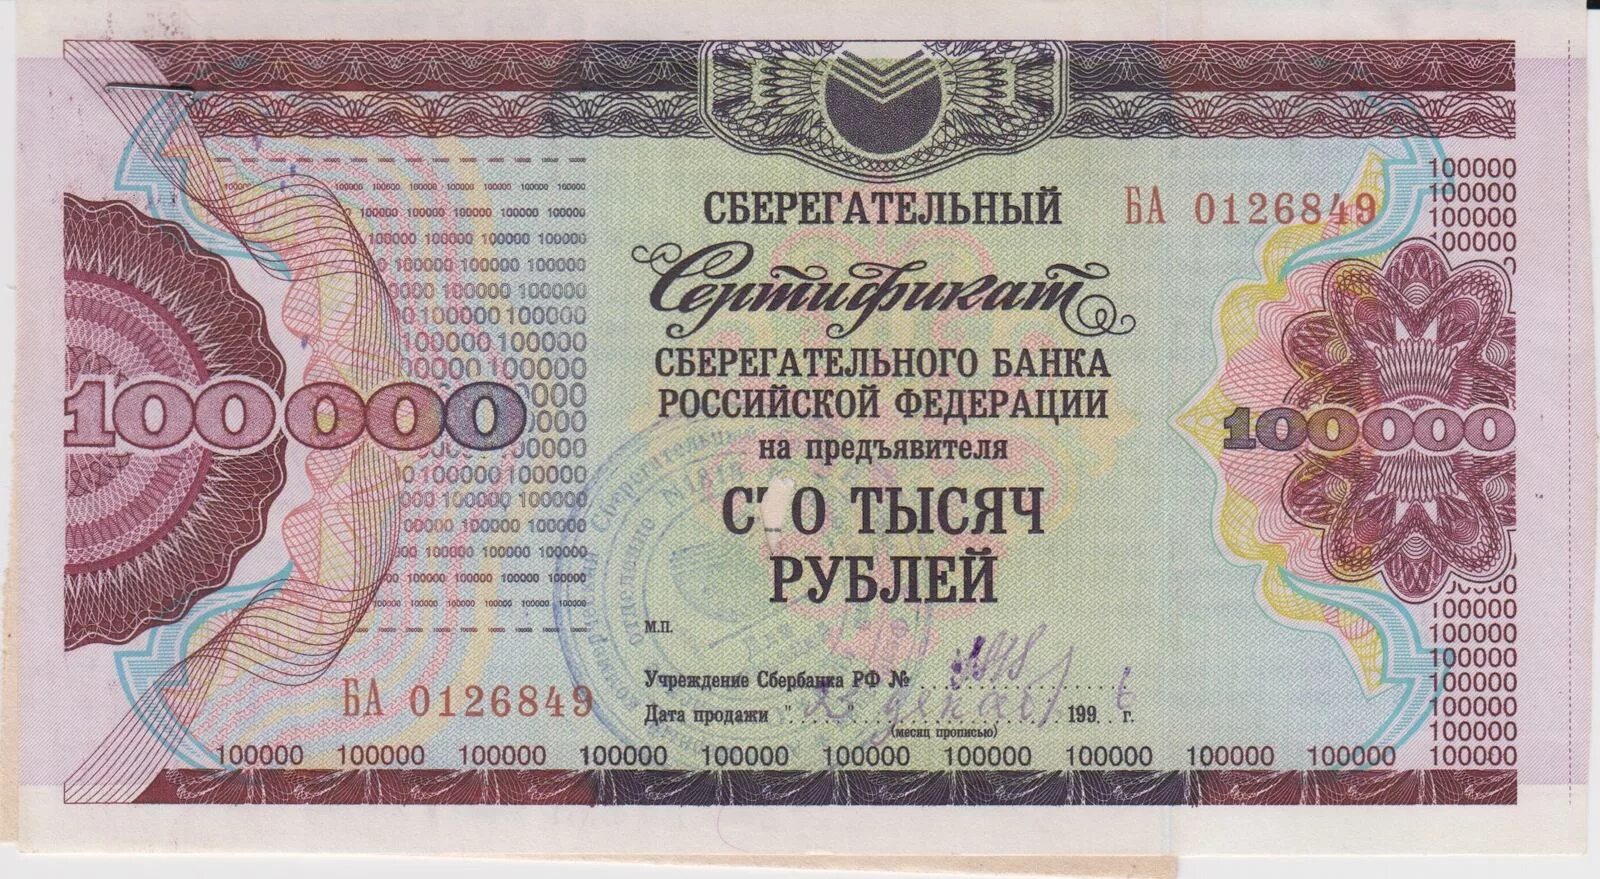 Сертификат на 100000. Сертификат на 100000 руб. Сертификат на 100 тысяч рублей. Сертификат на 100000 рублей шаблон.